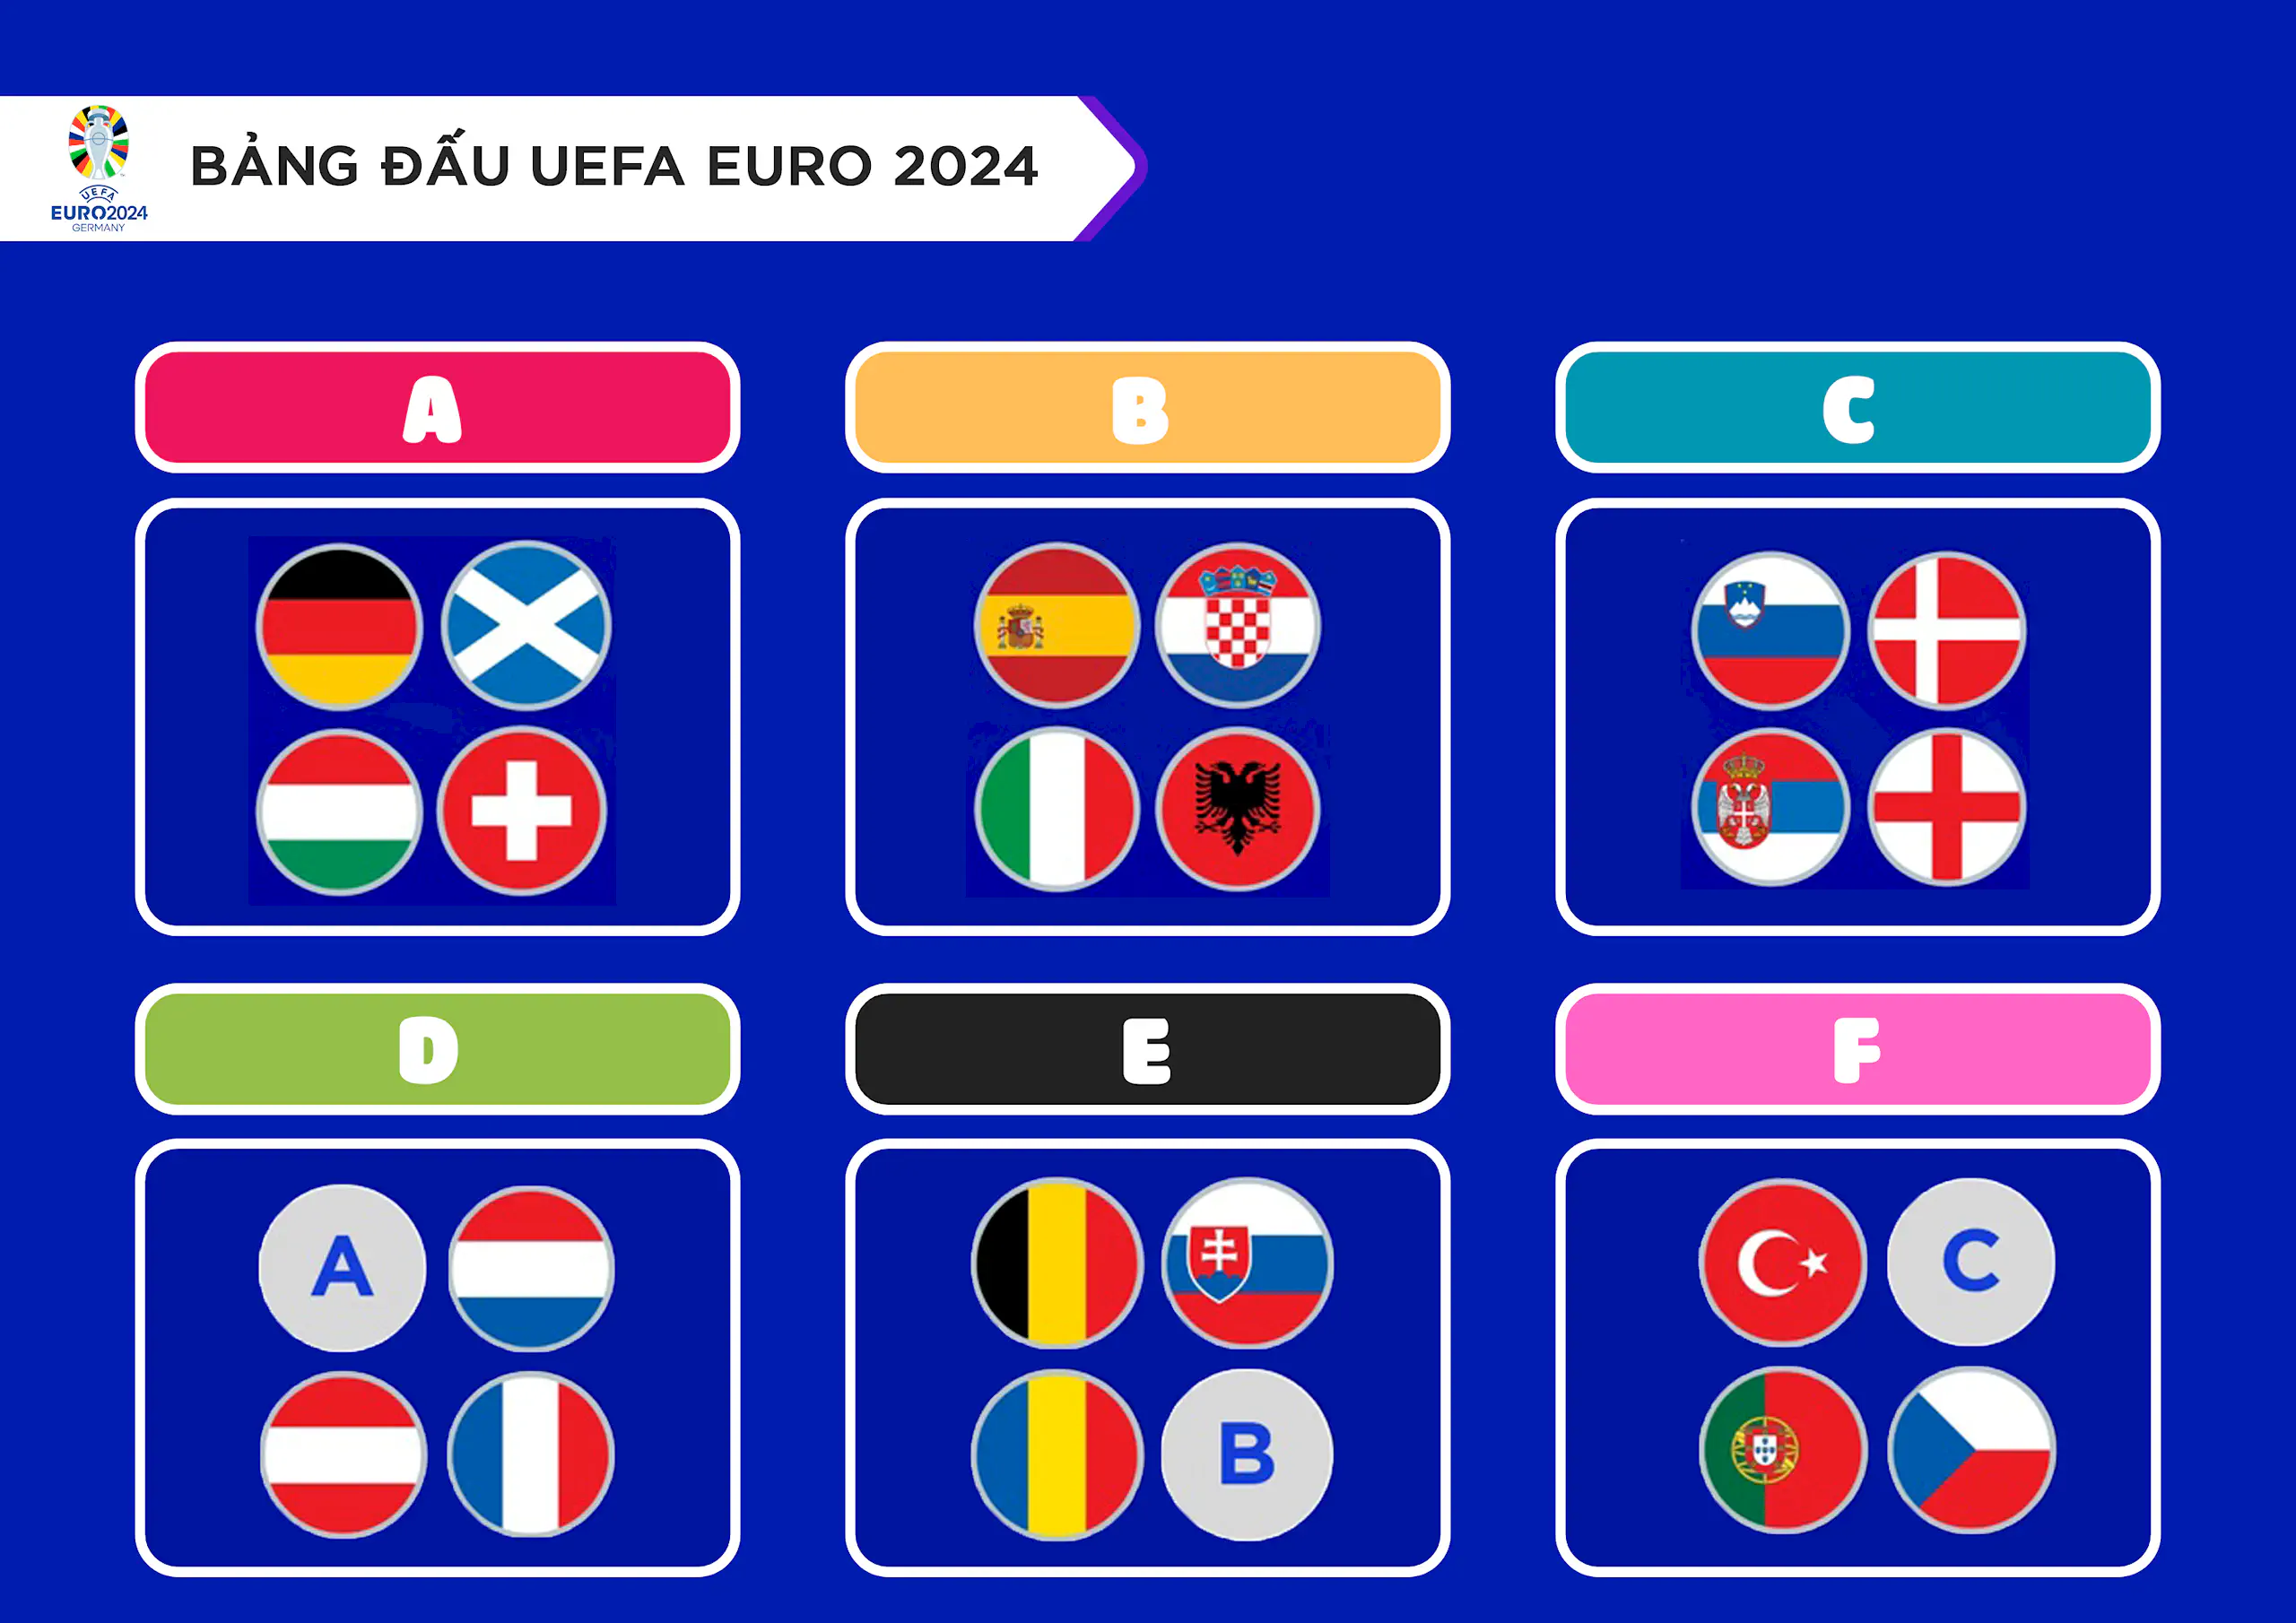 Lịch thi đấu UEFA EURO 2024 ngày 18/06